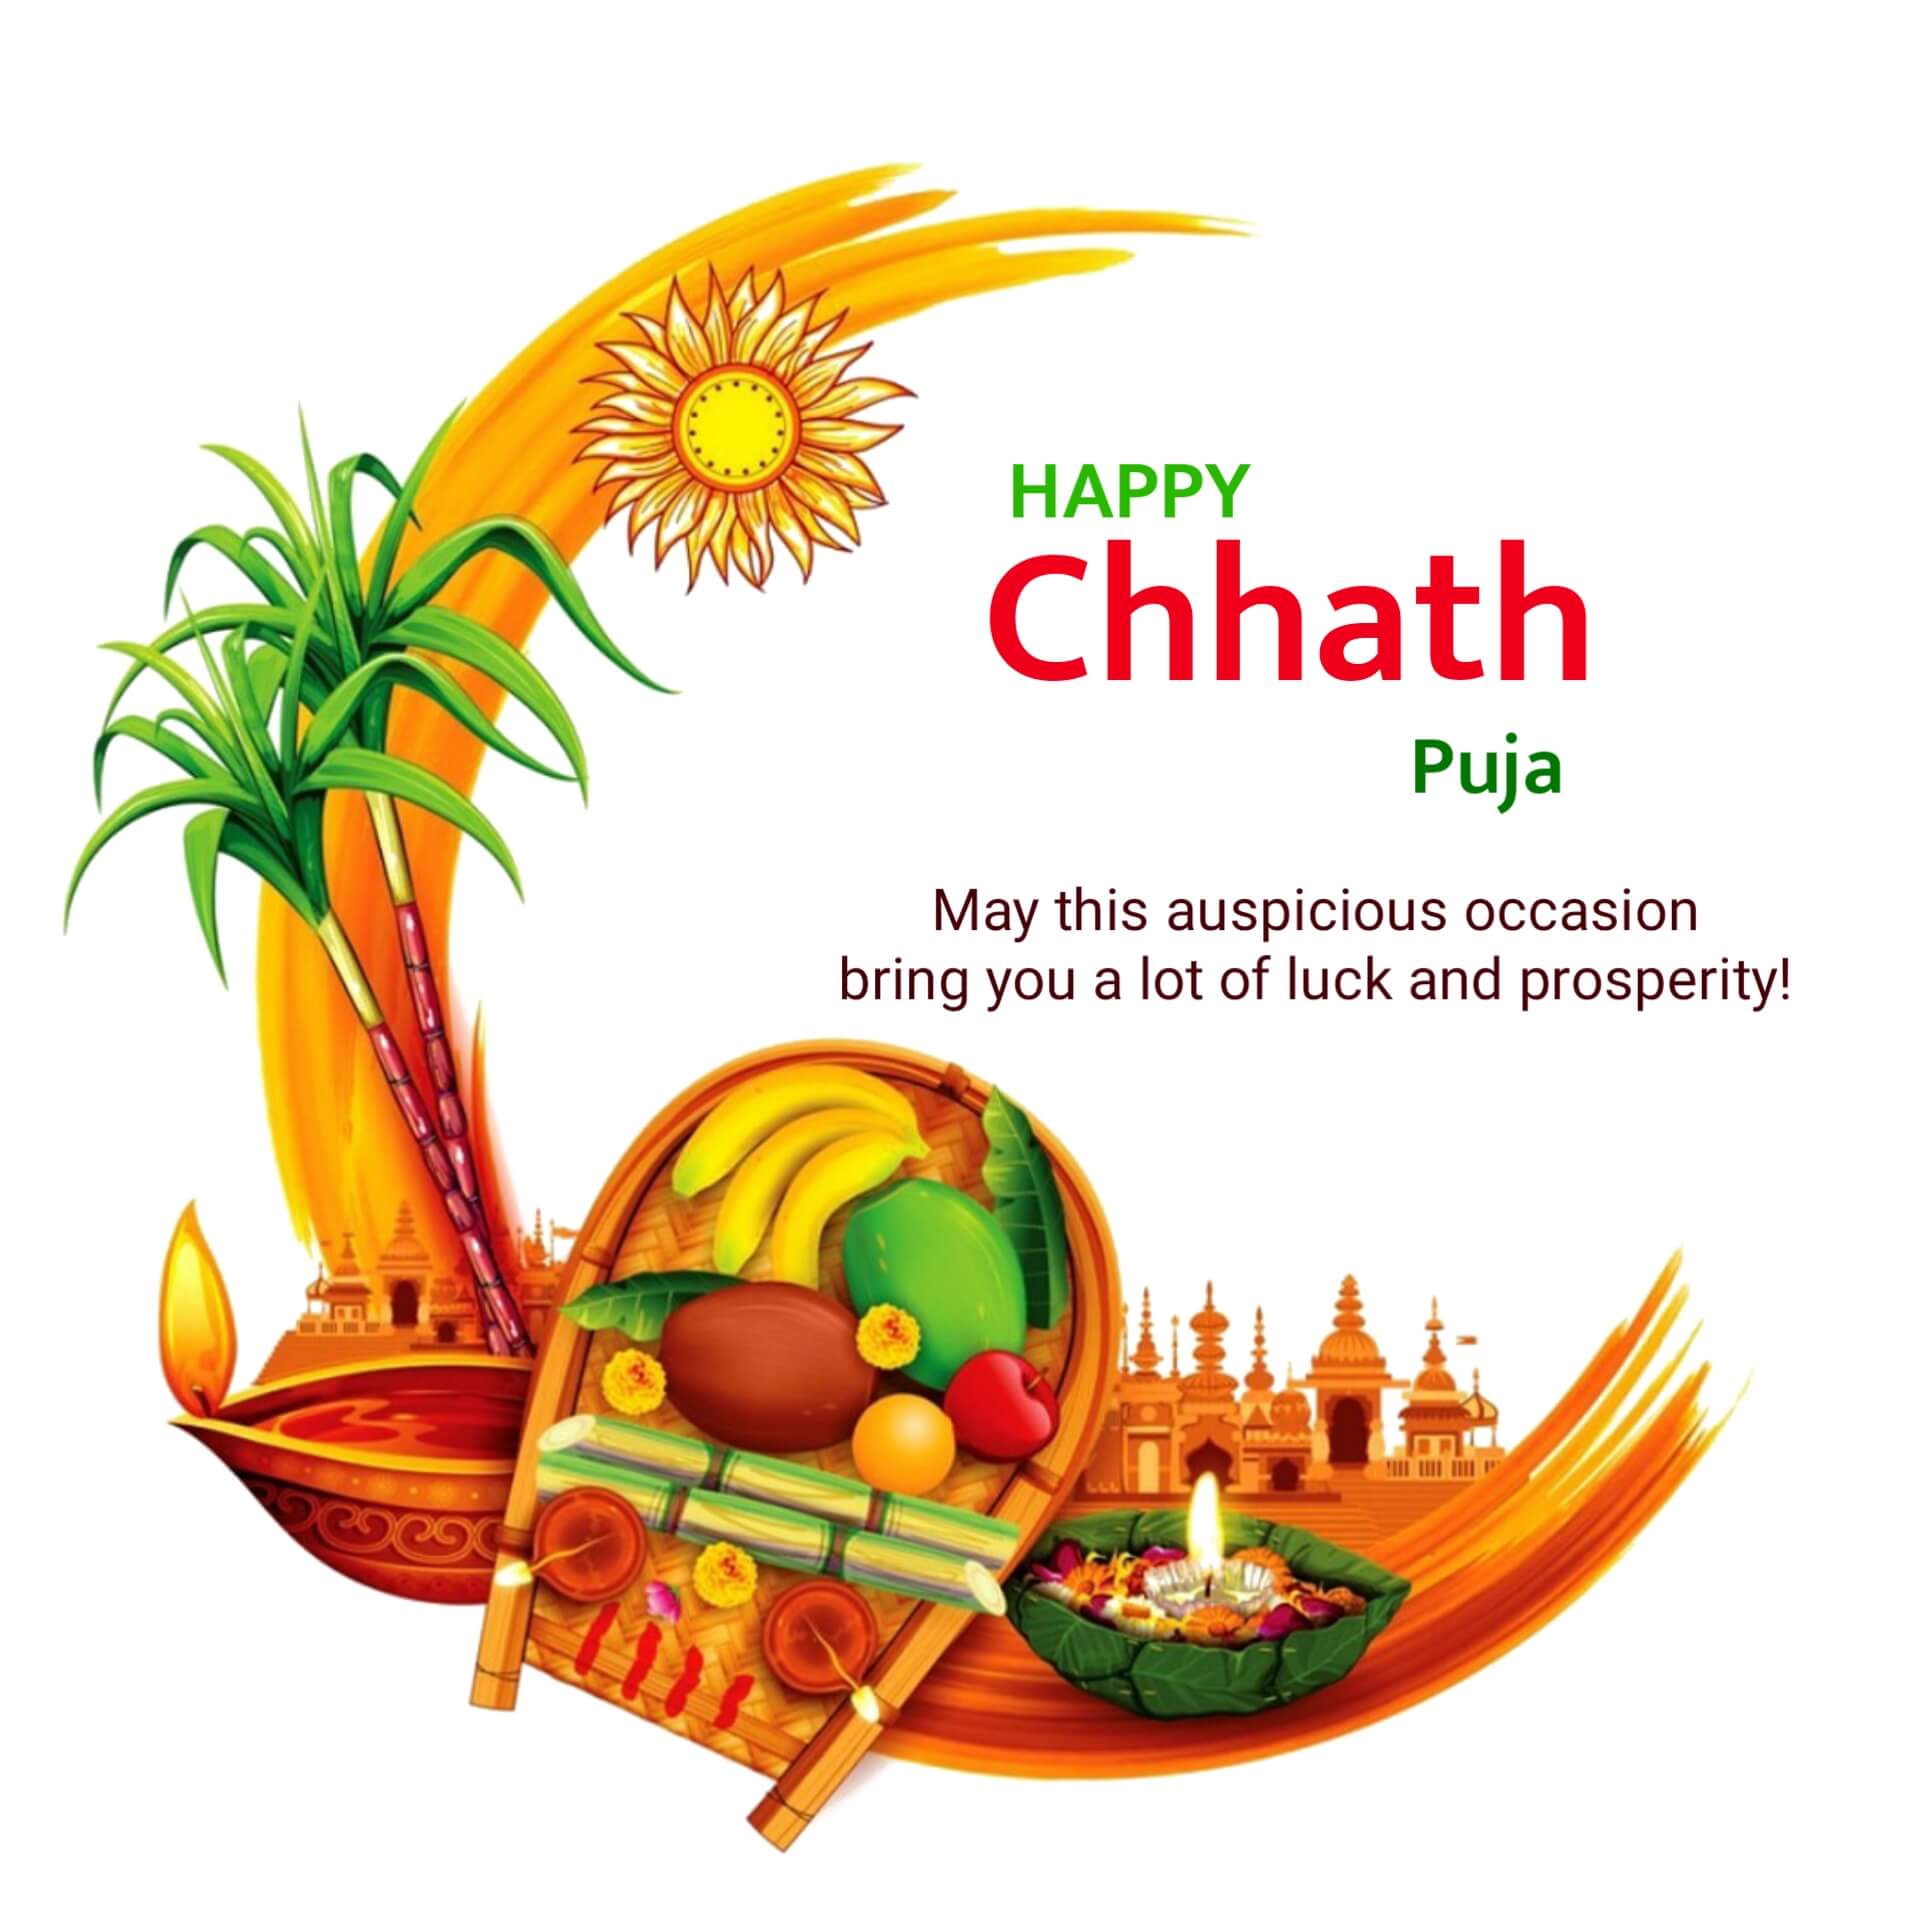 Happy Chhath Puja Image Wishes